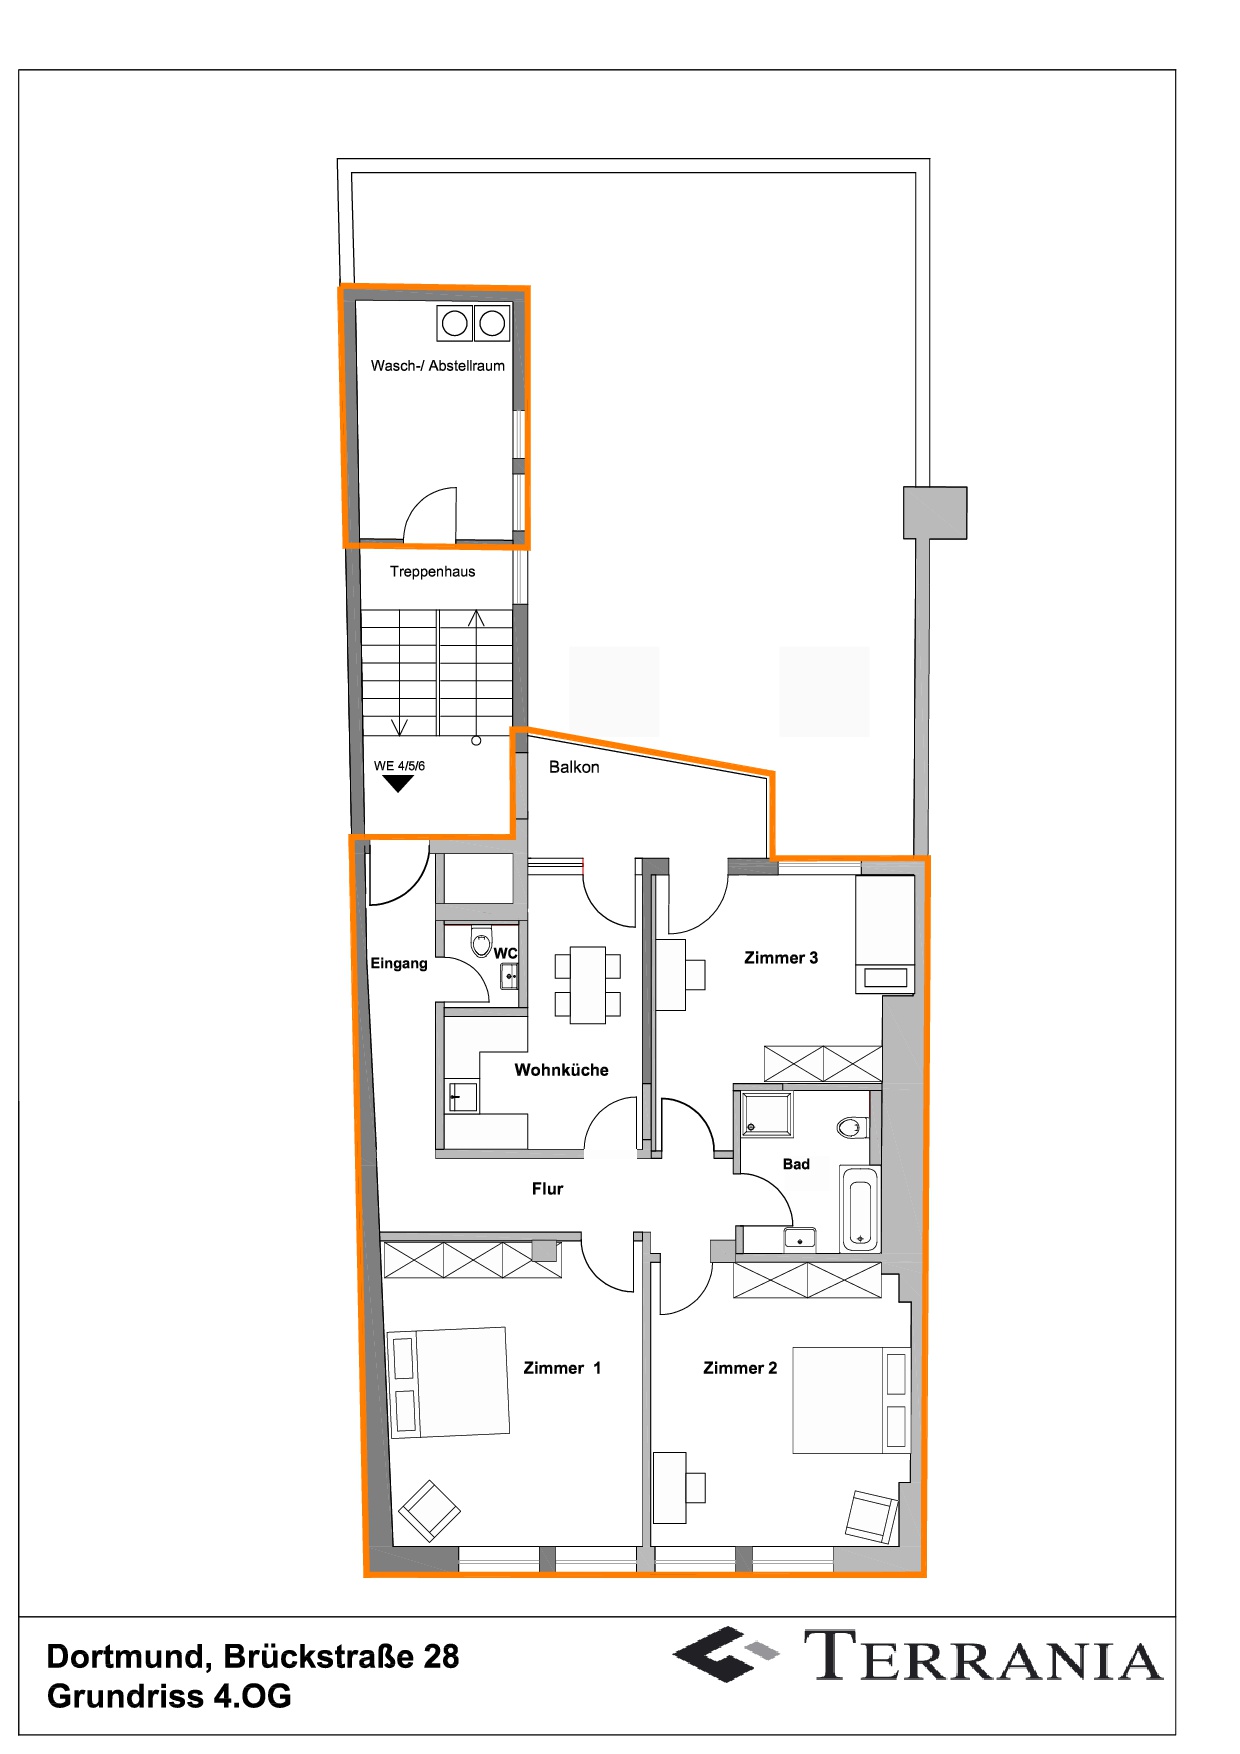 Attraktive sanierte 3-Zimmer-Wohnung mit Balkon und Einbauküche im Herzen von Dortmund! - Grundriss 4OG